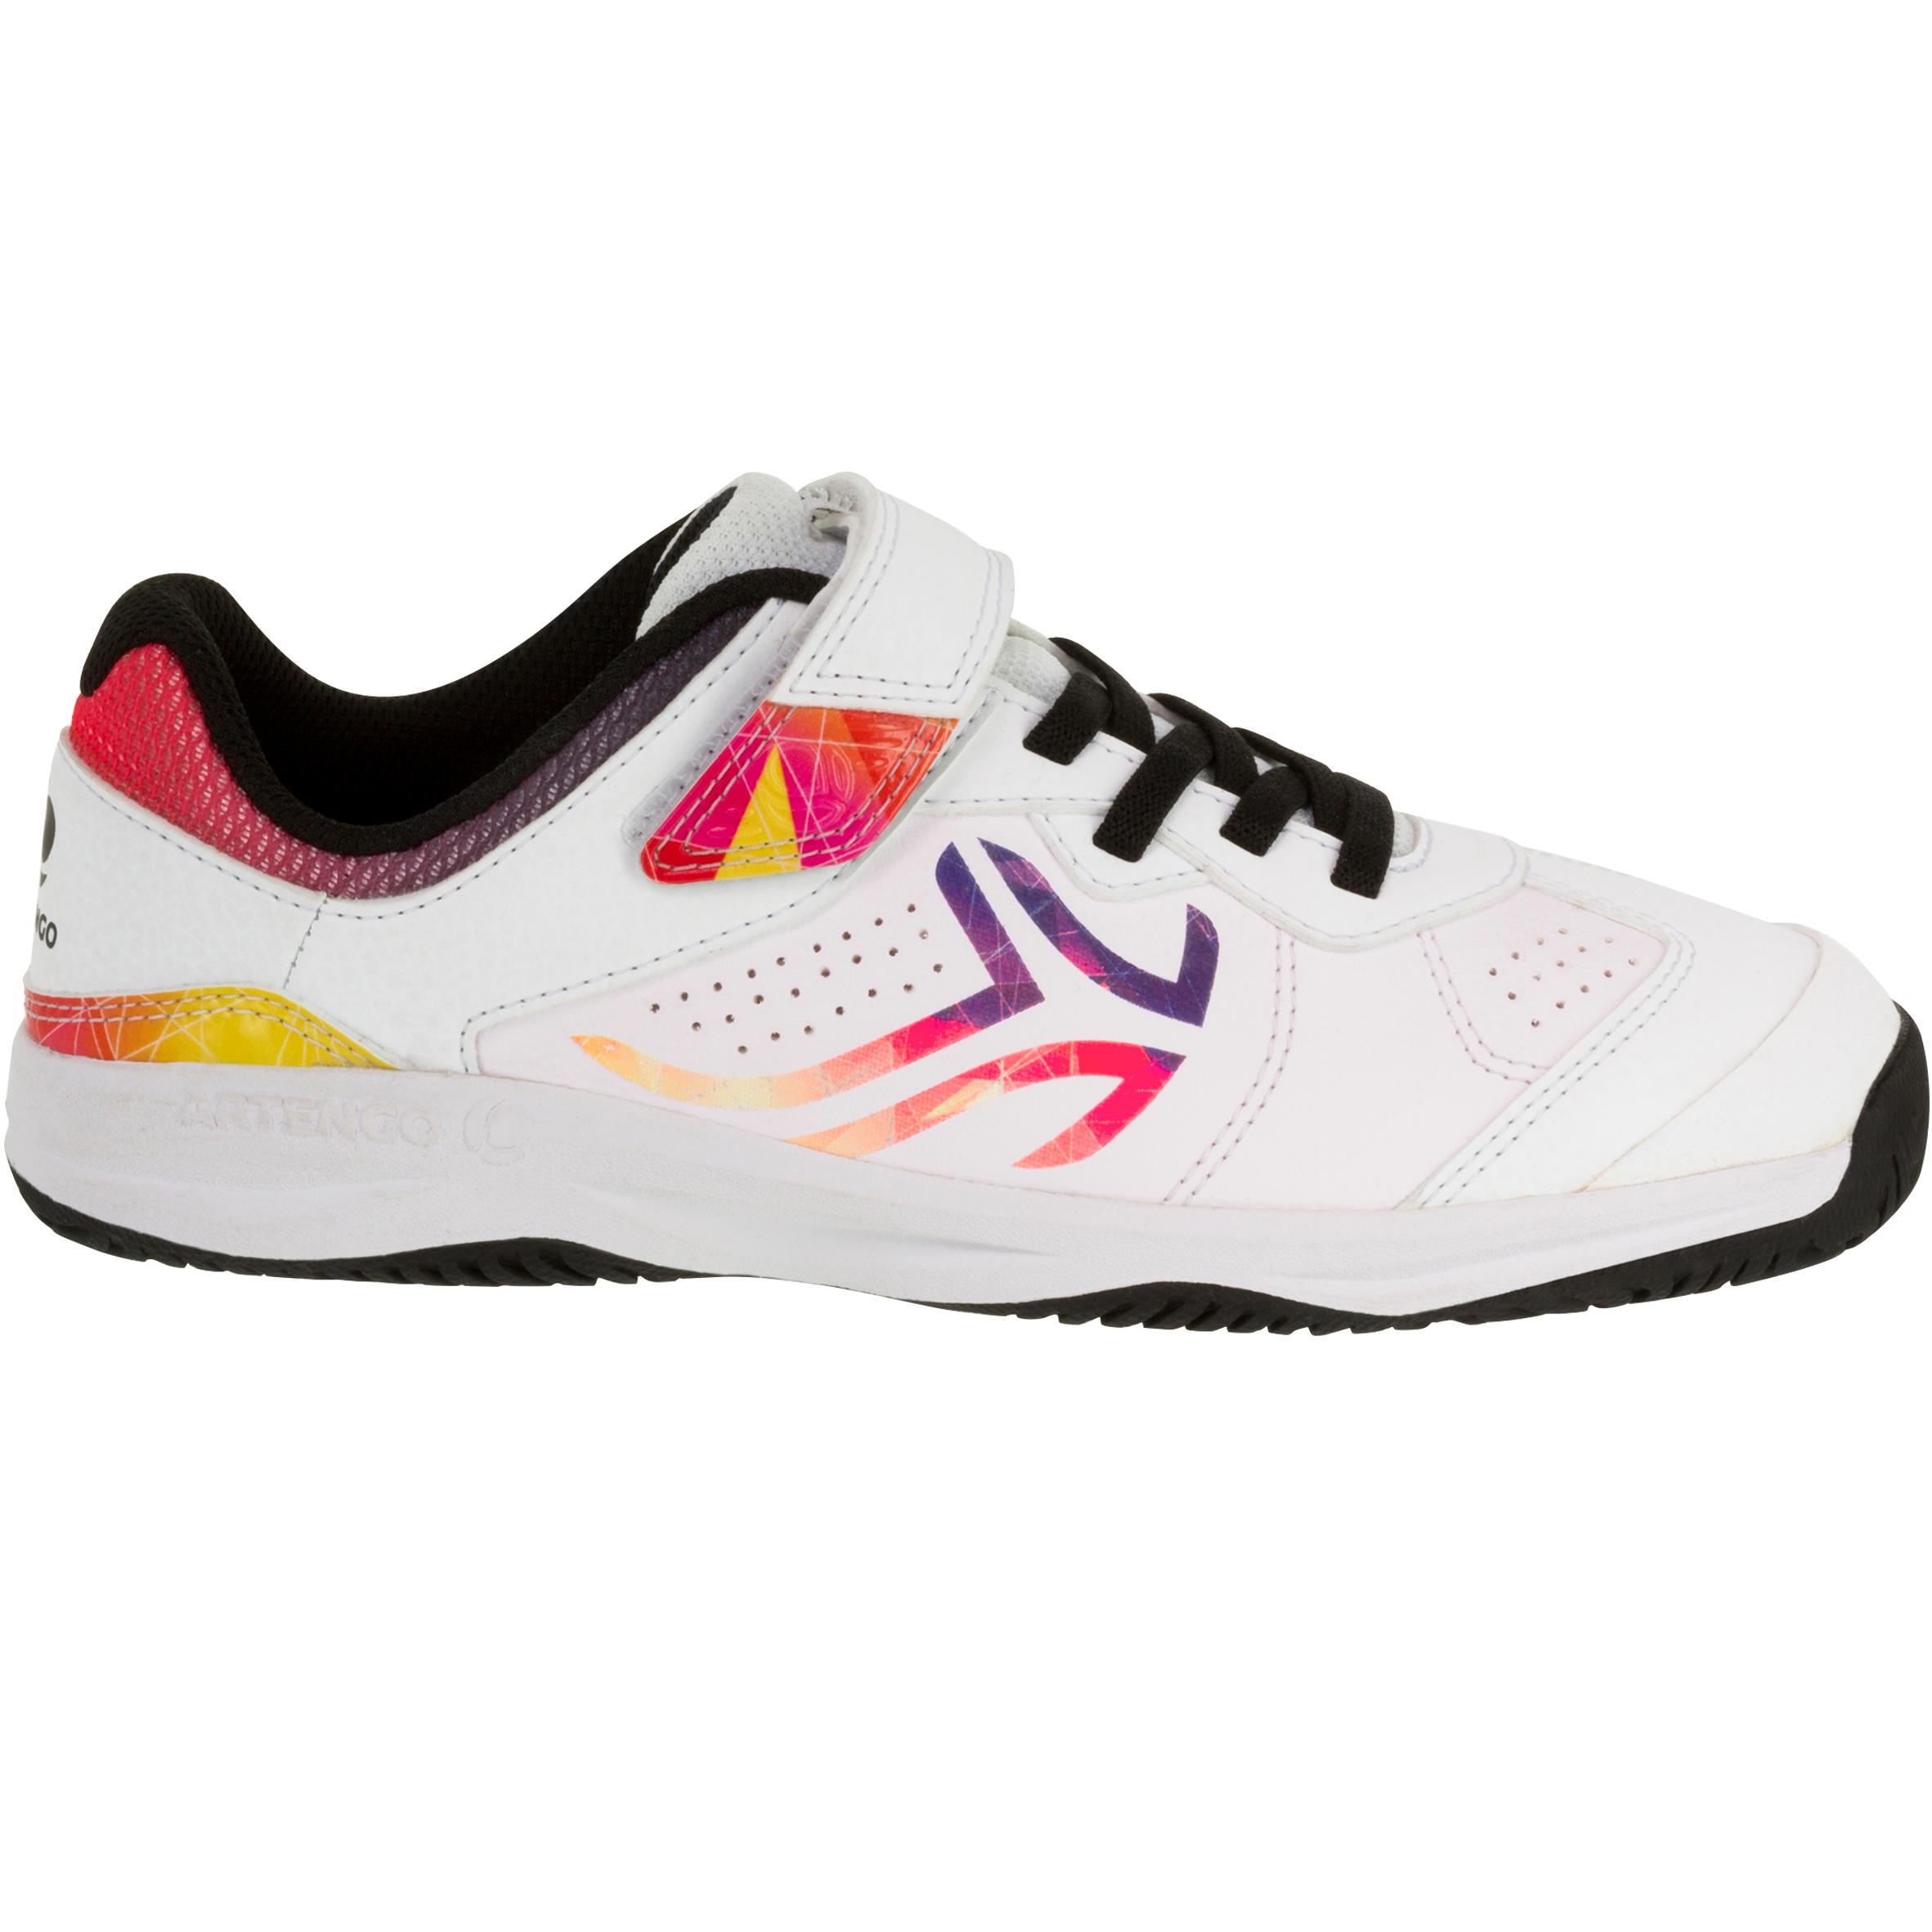 [ด่วน!! โปรโมชั่นมีจำนวนจำกัด] รองเท้าเทนนิสสำหรับเด็กรุ่น TS160 (สีขาว/โลโก้หลายสี) สำหรับ เทนนิส